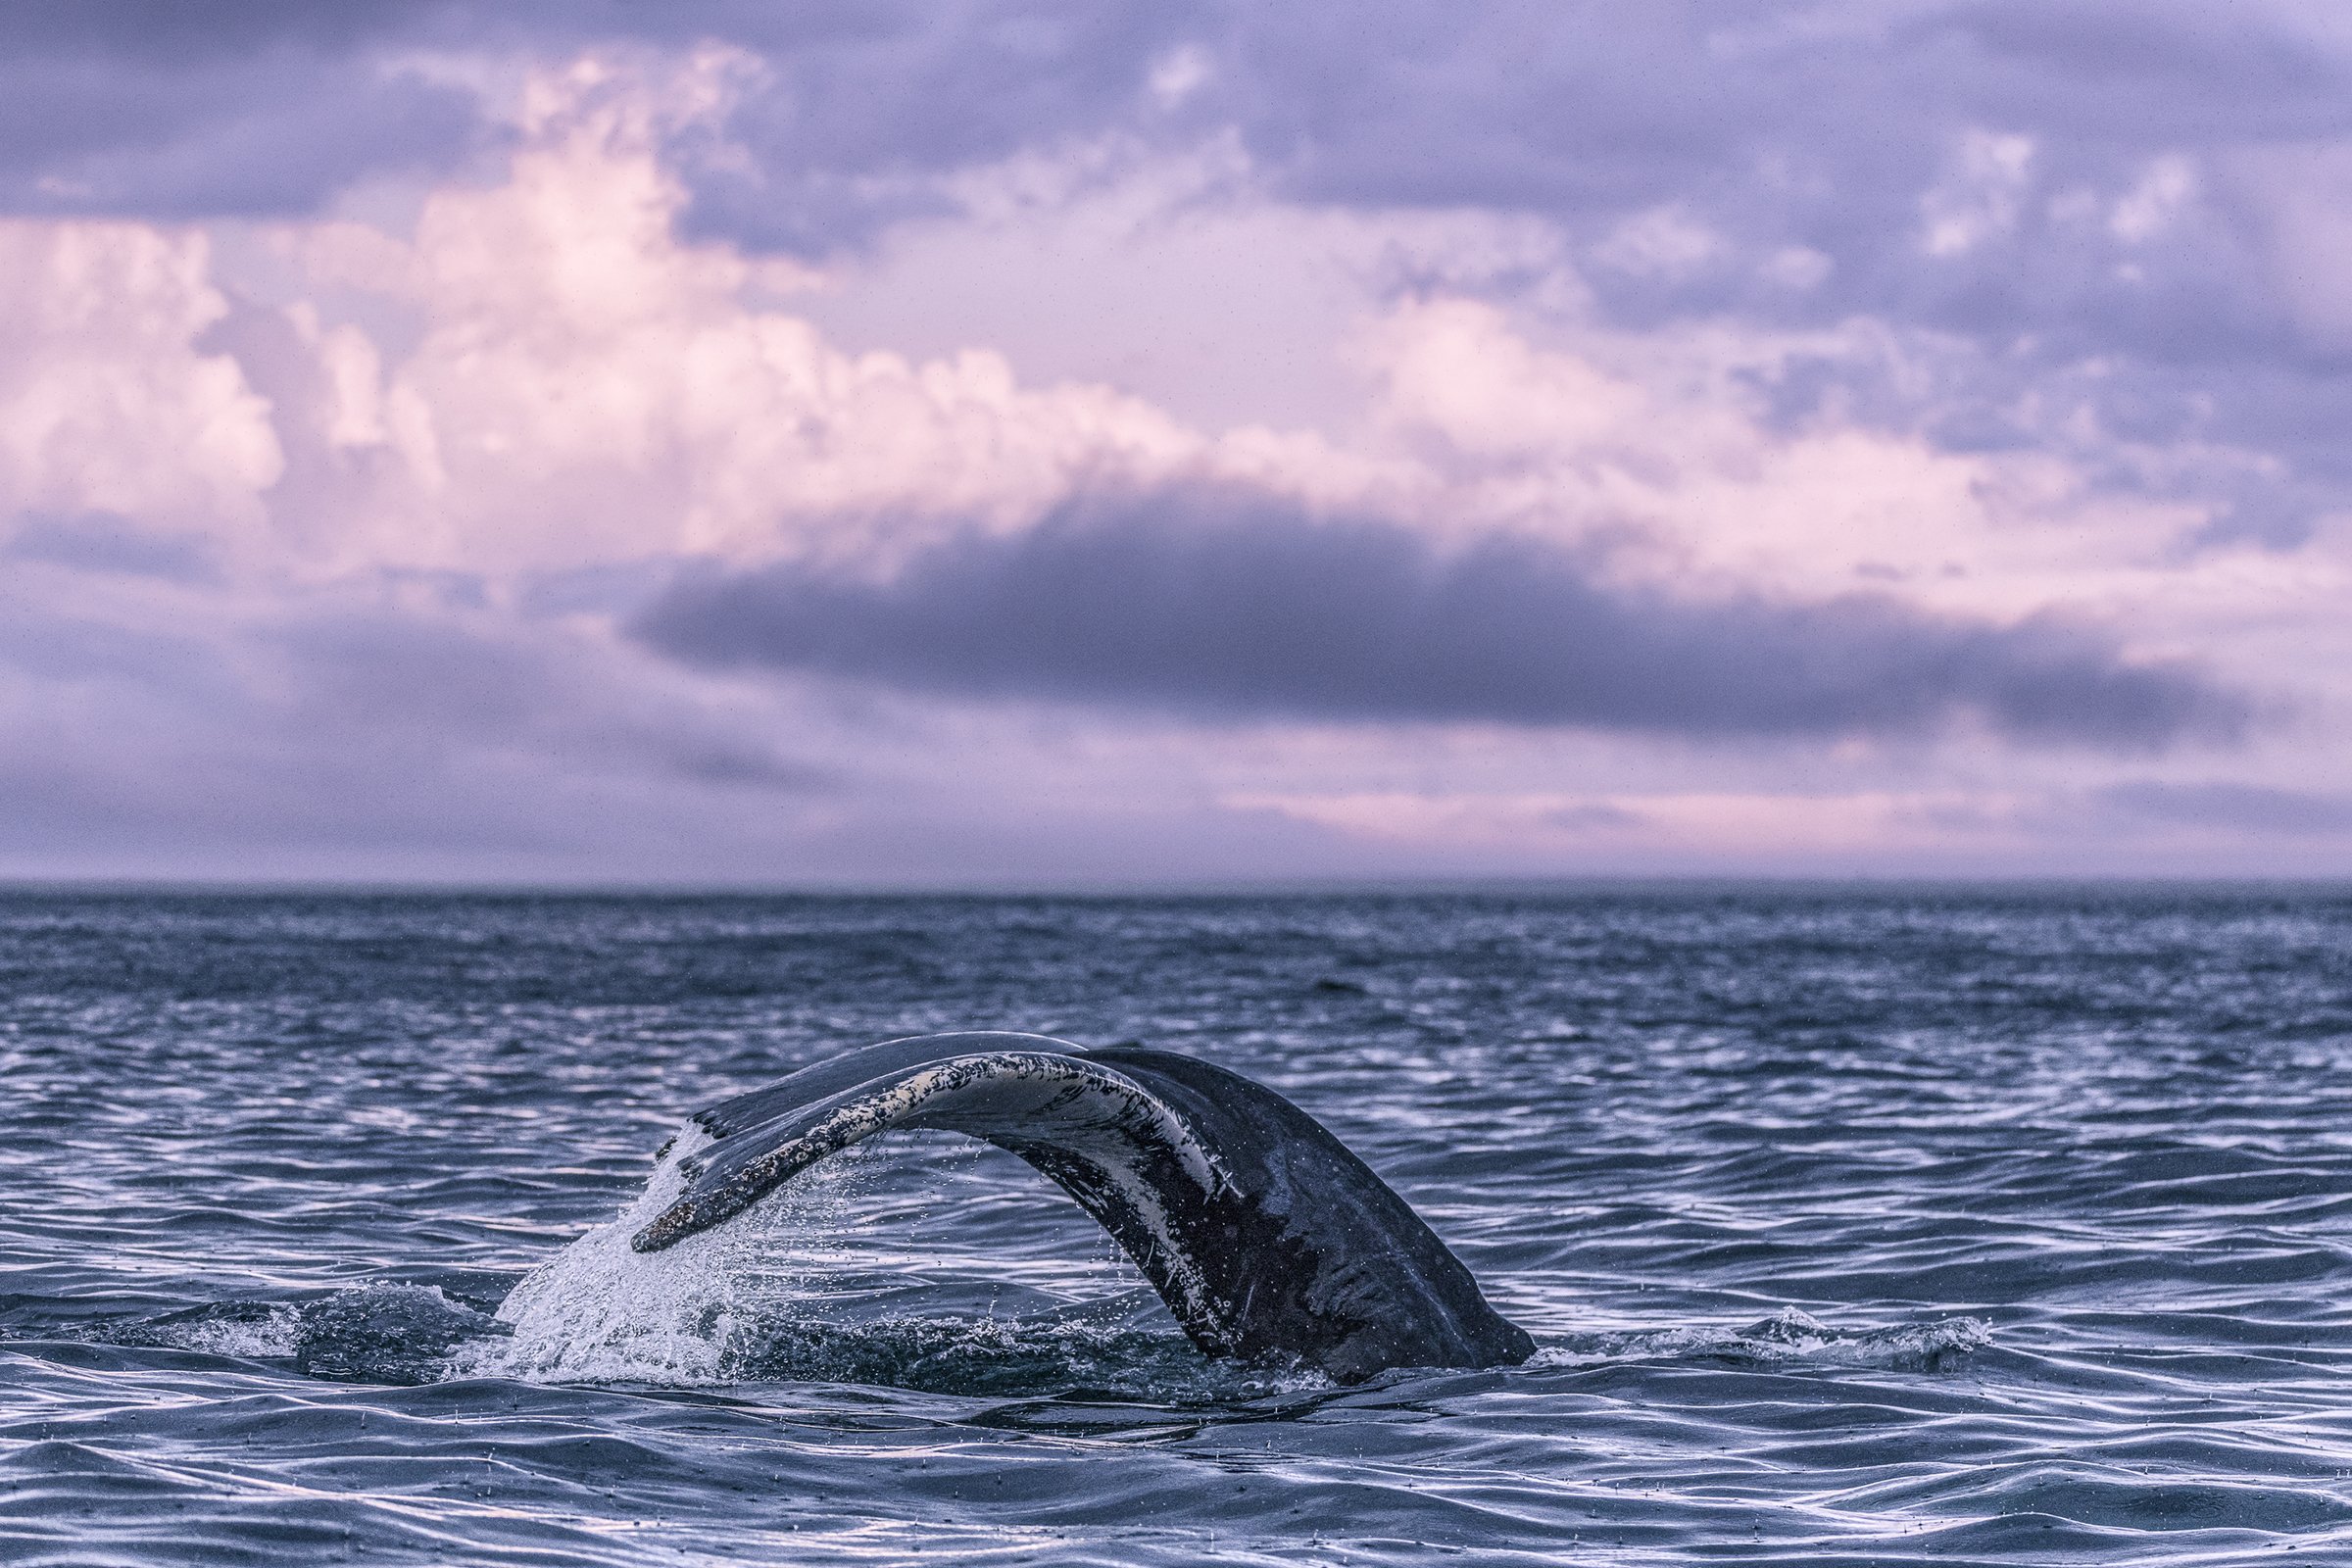 humpback whale tail.jpg